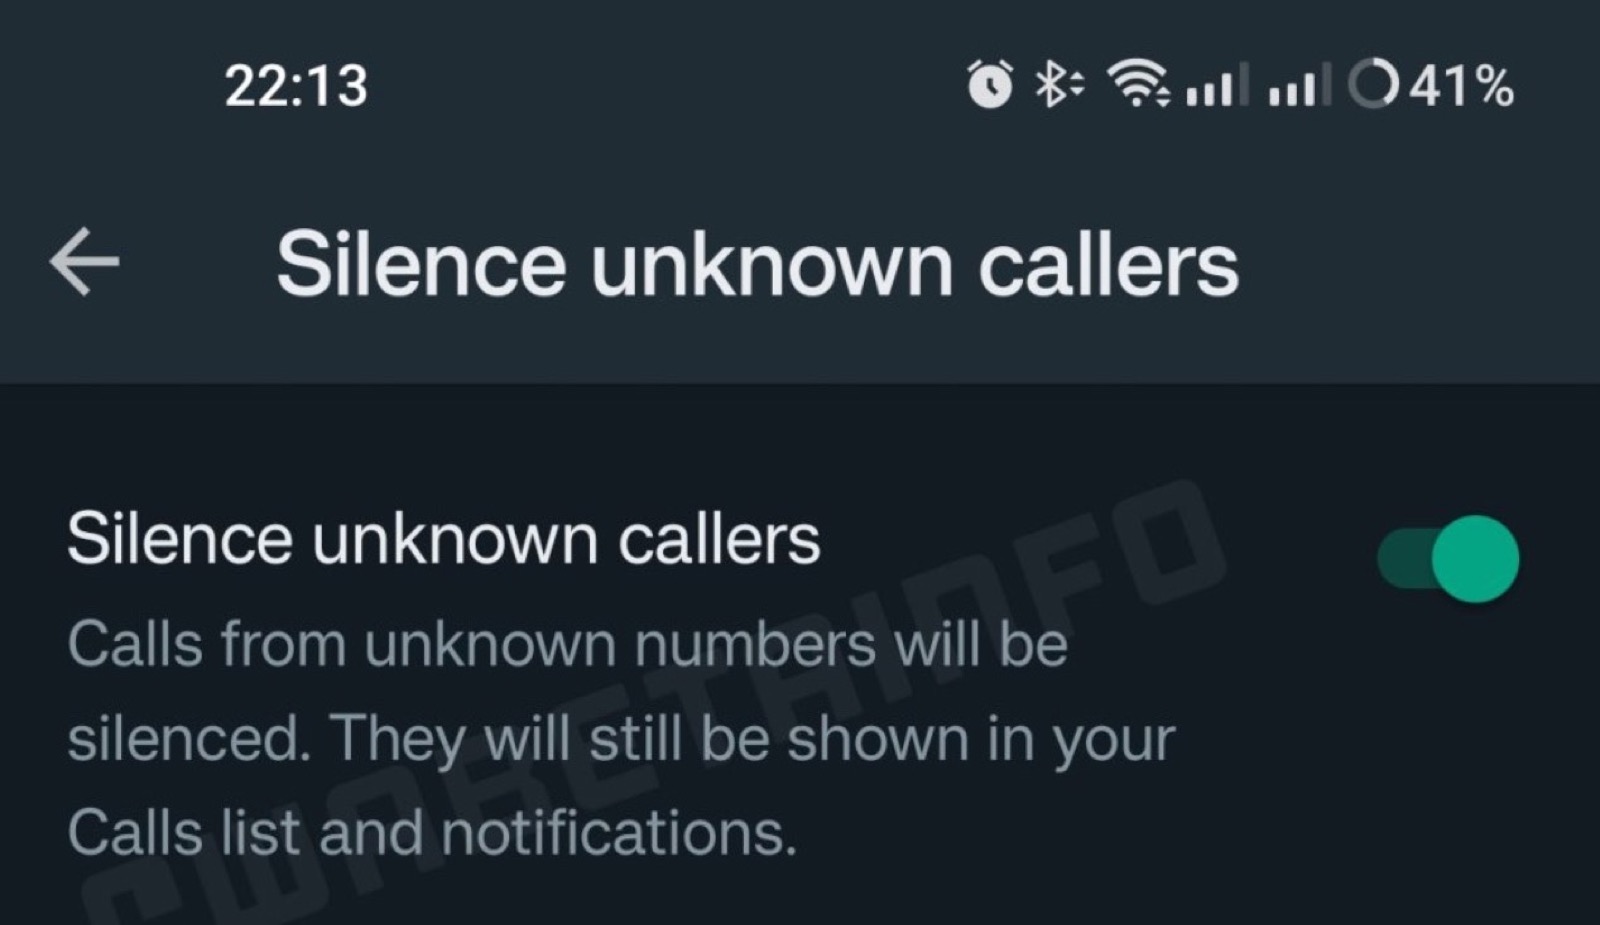 WhatsApp bloccherà le telefonate da sconosciuti